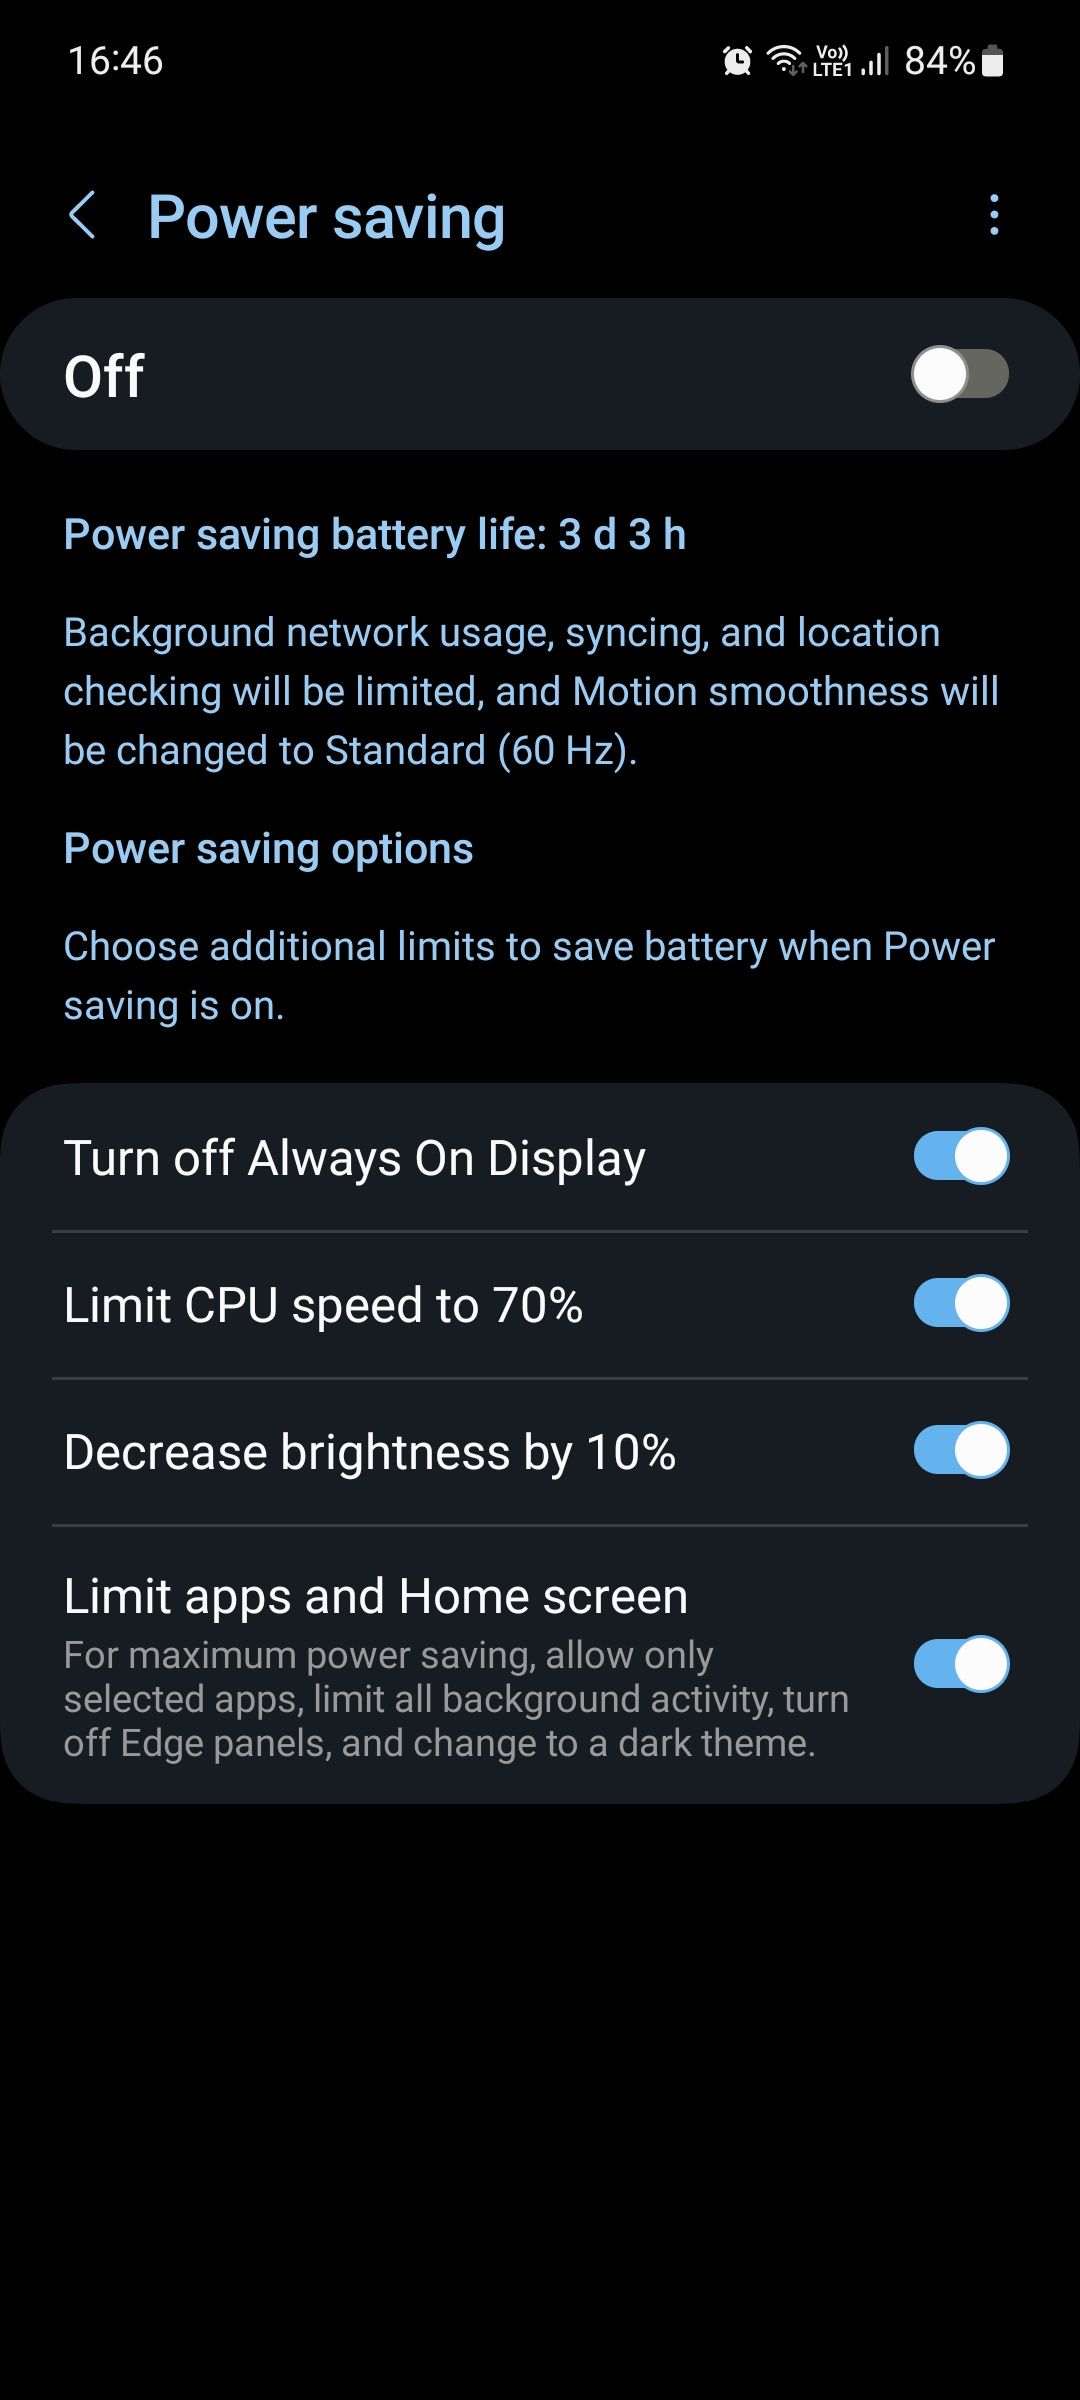 Samsung One UI 5 Power saving menu